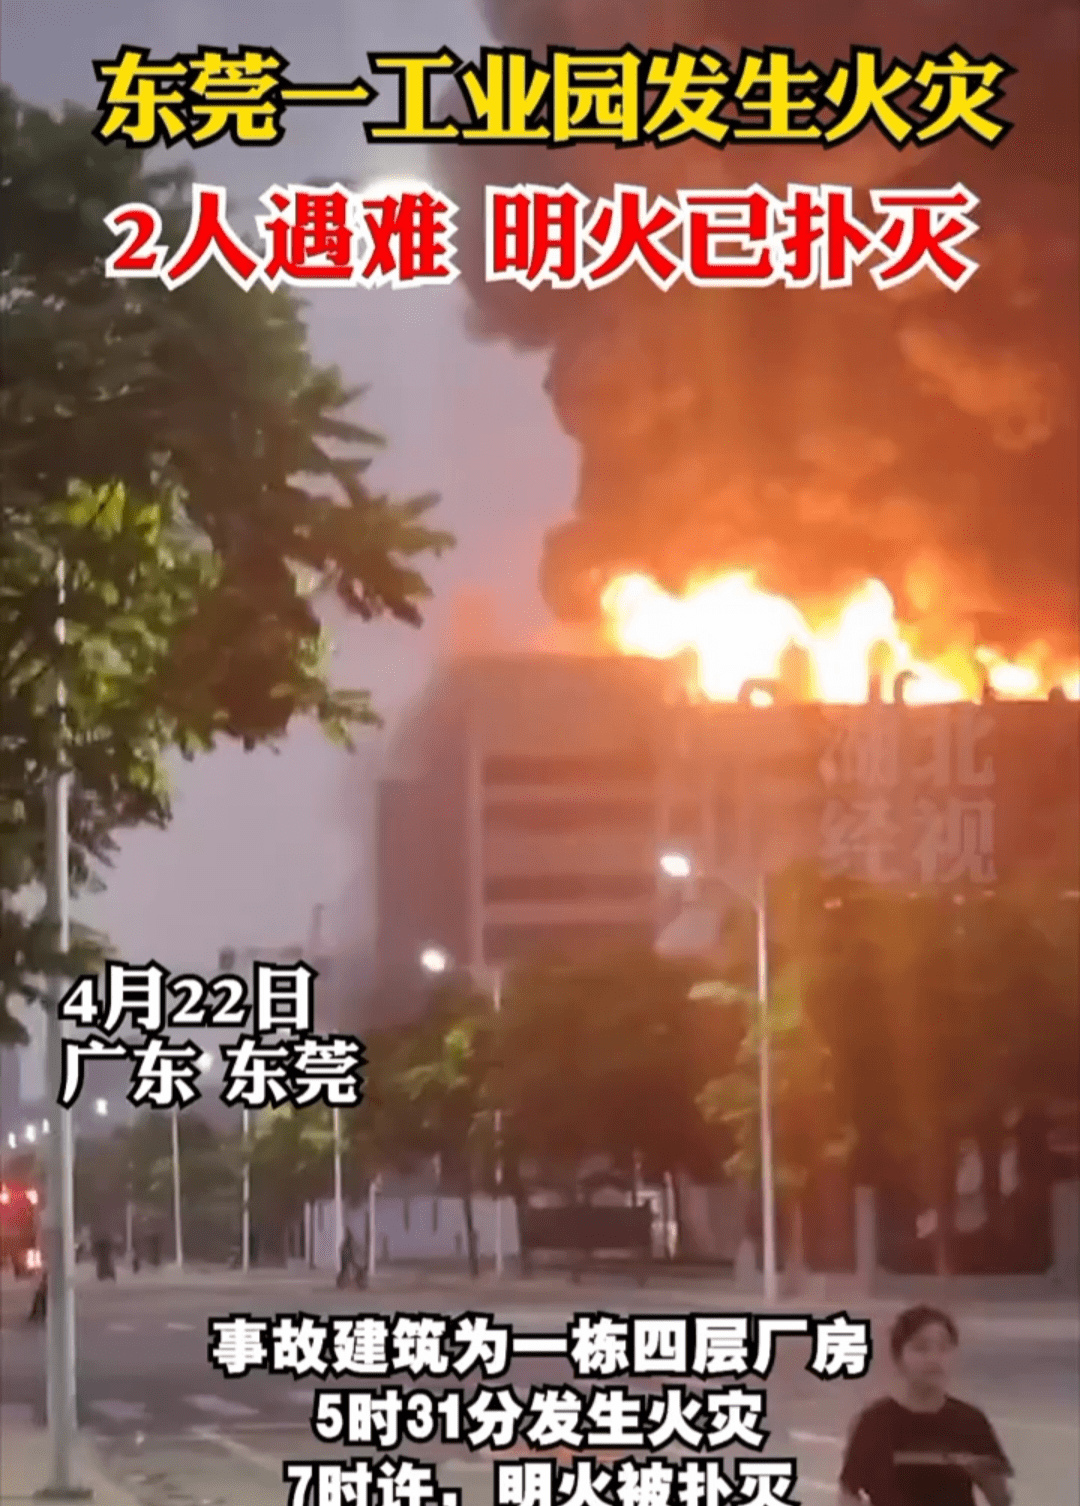 位于东莞市麻涌镇豪丰工业园一栋厂房发生火灾